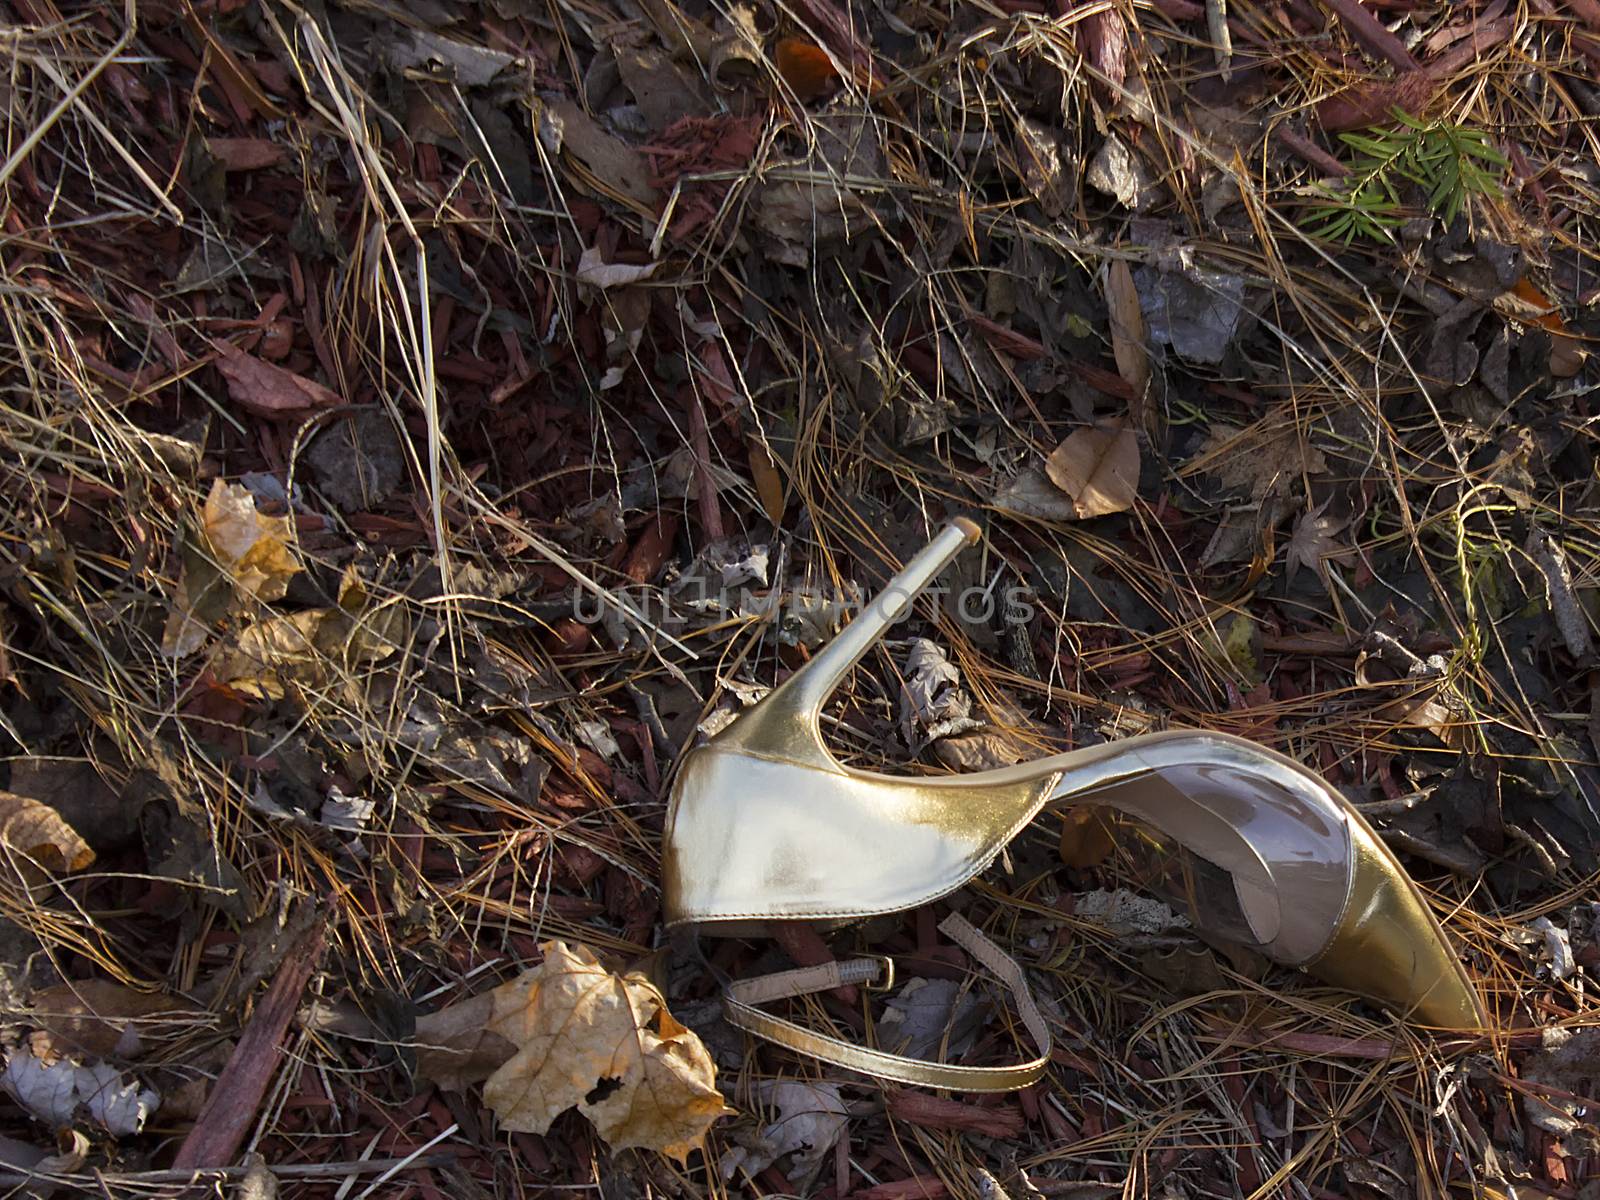 Lost golden shoe by roadside by CharlieFloyd